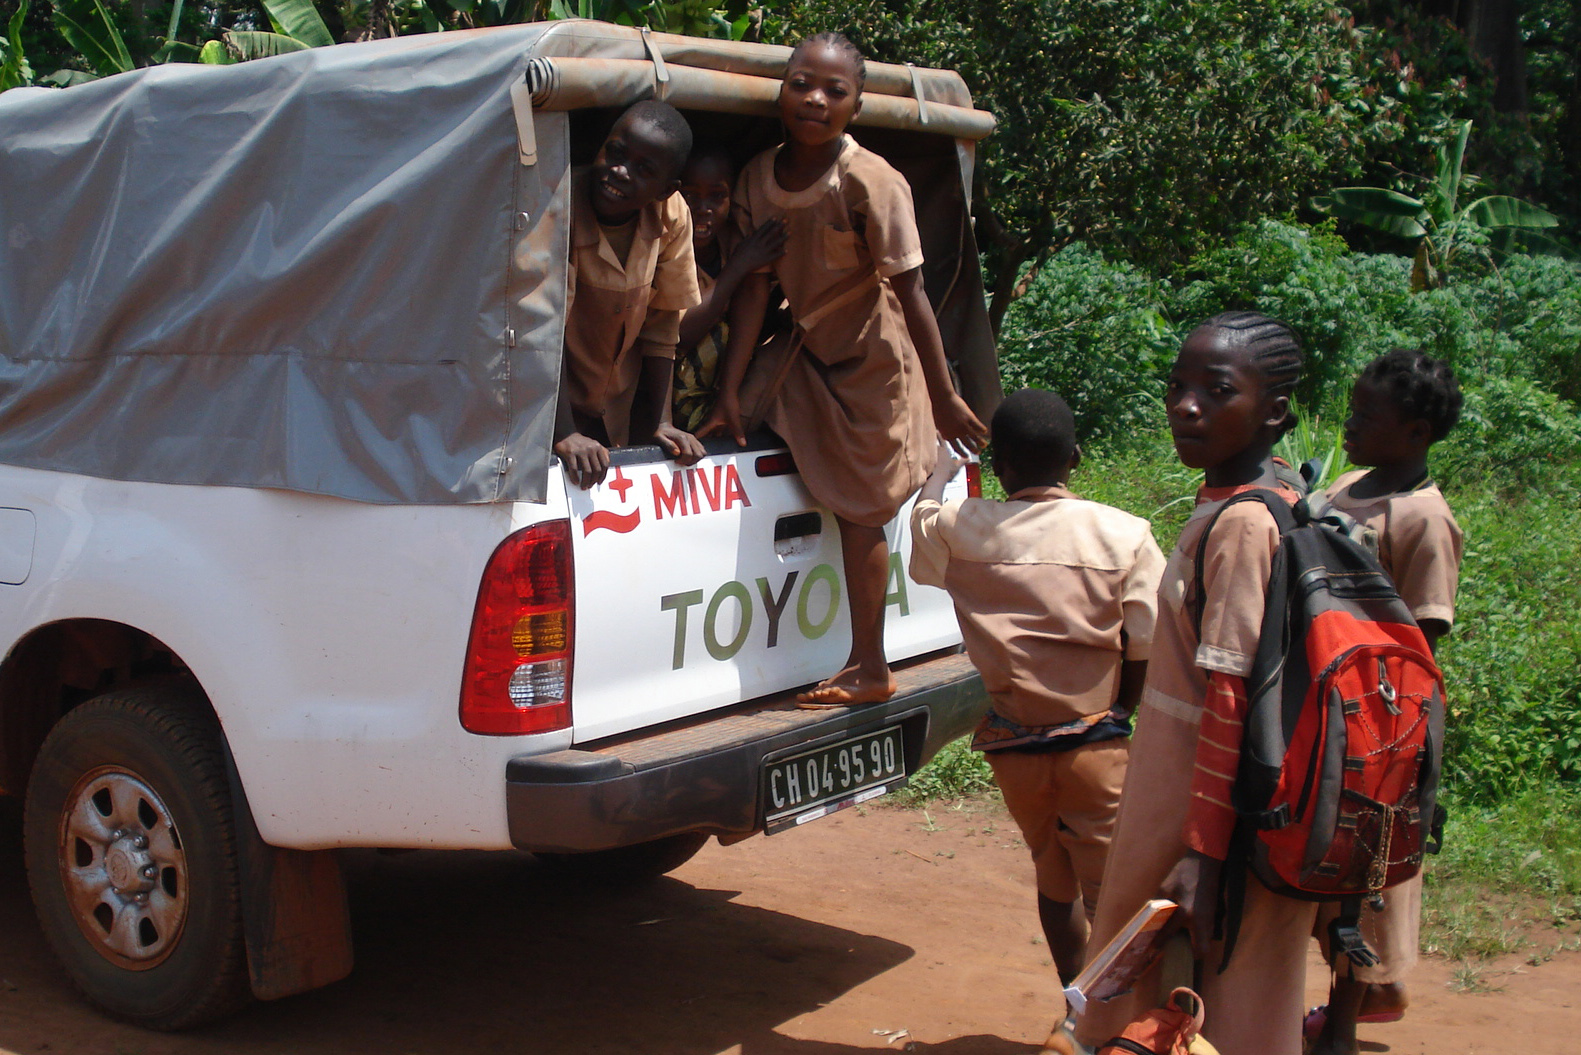 Schultransport mit einem MIVA-Auto